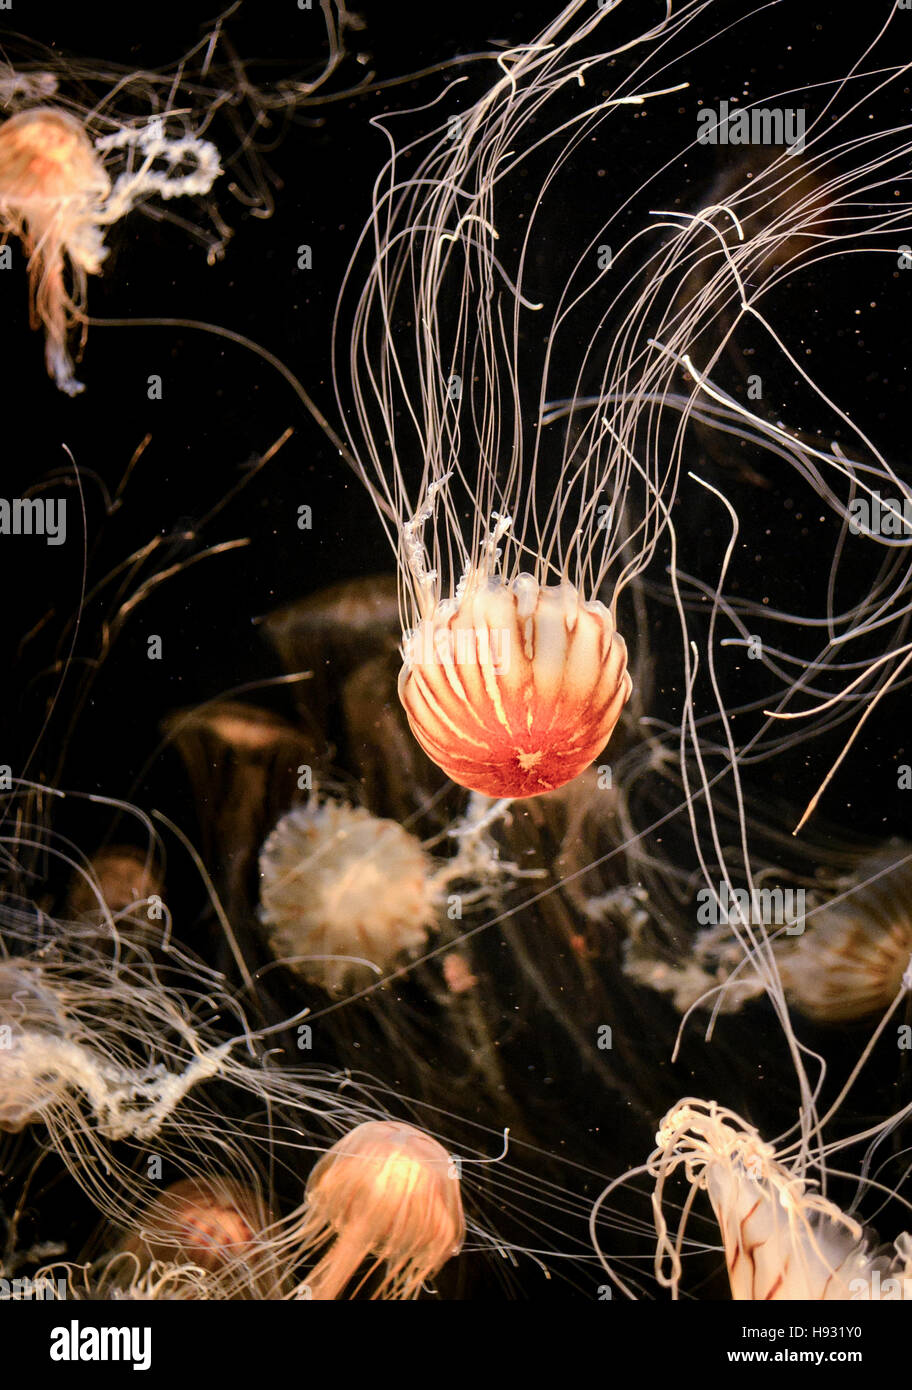 Crinière de lion ou de cheveux dans l'aquarium de méduses sur un fond sombre Banque D'Images